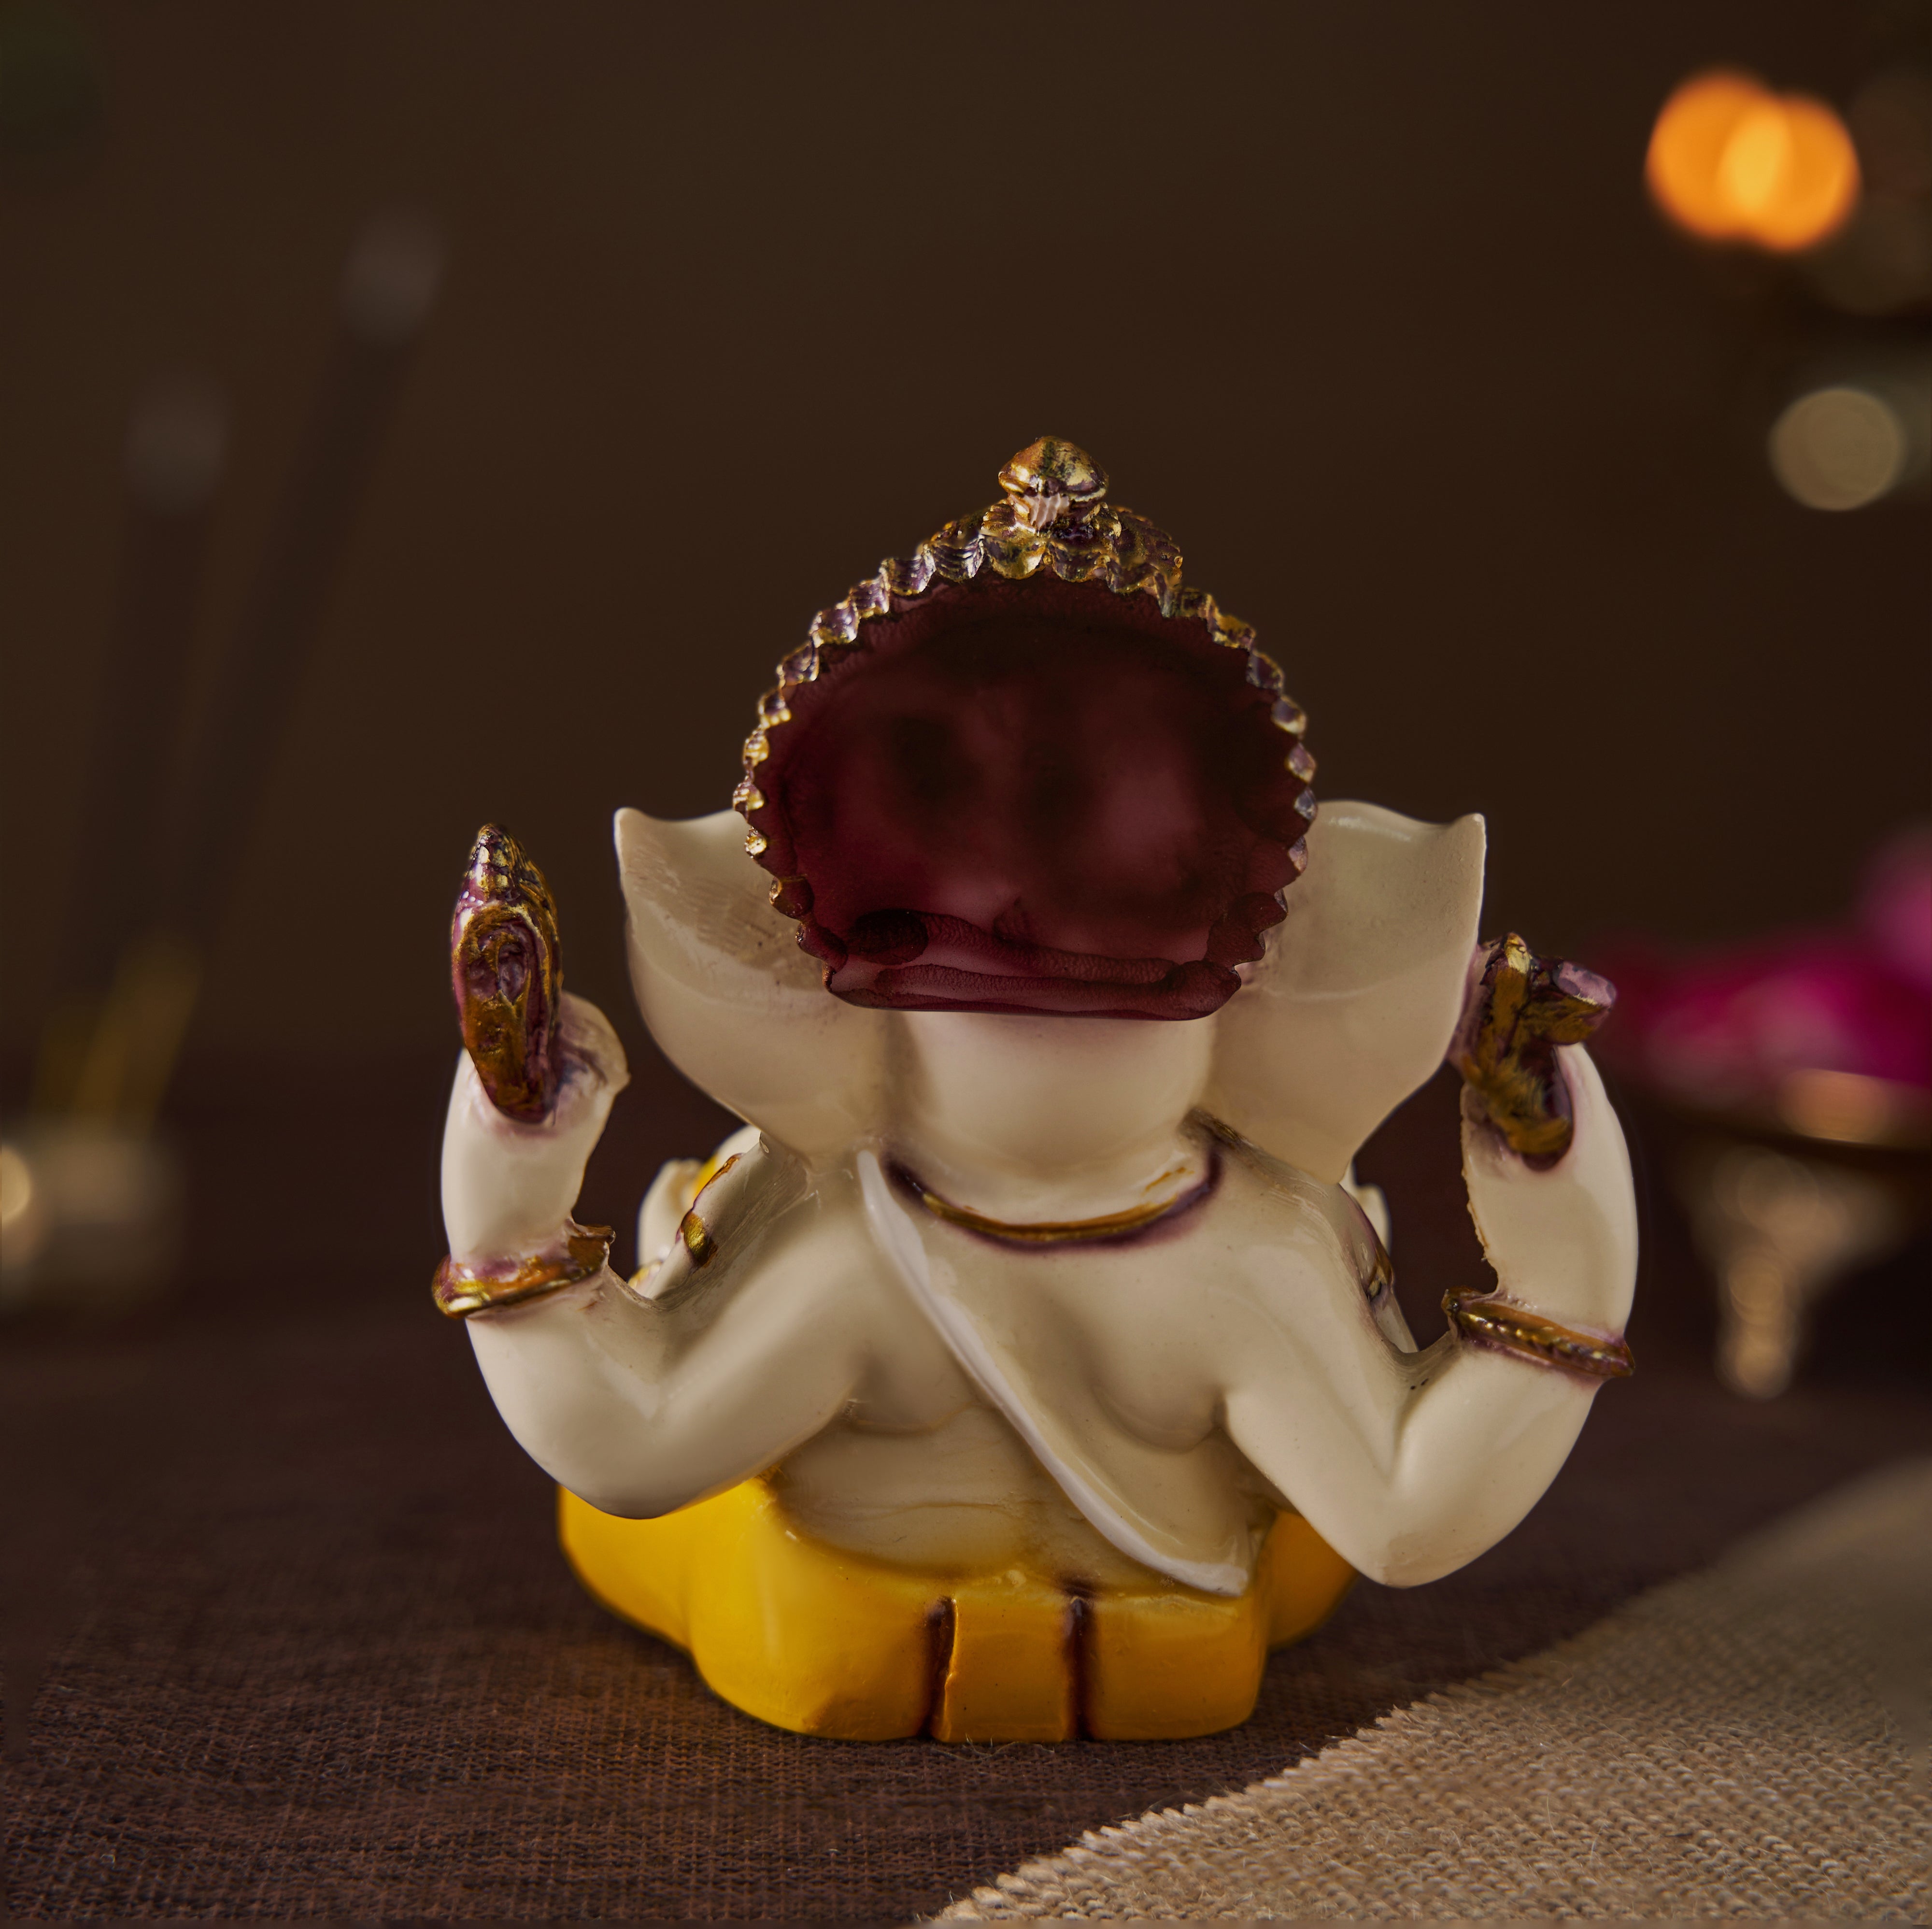 Lord Ganesha | Ganpati | Vinayak Idol